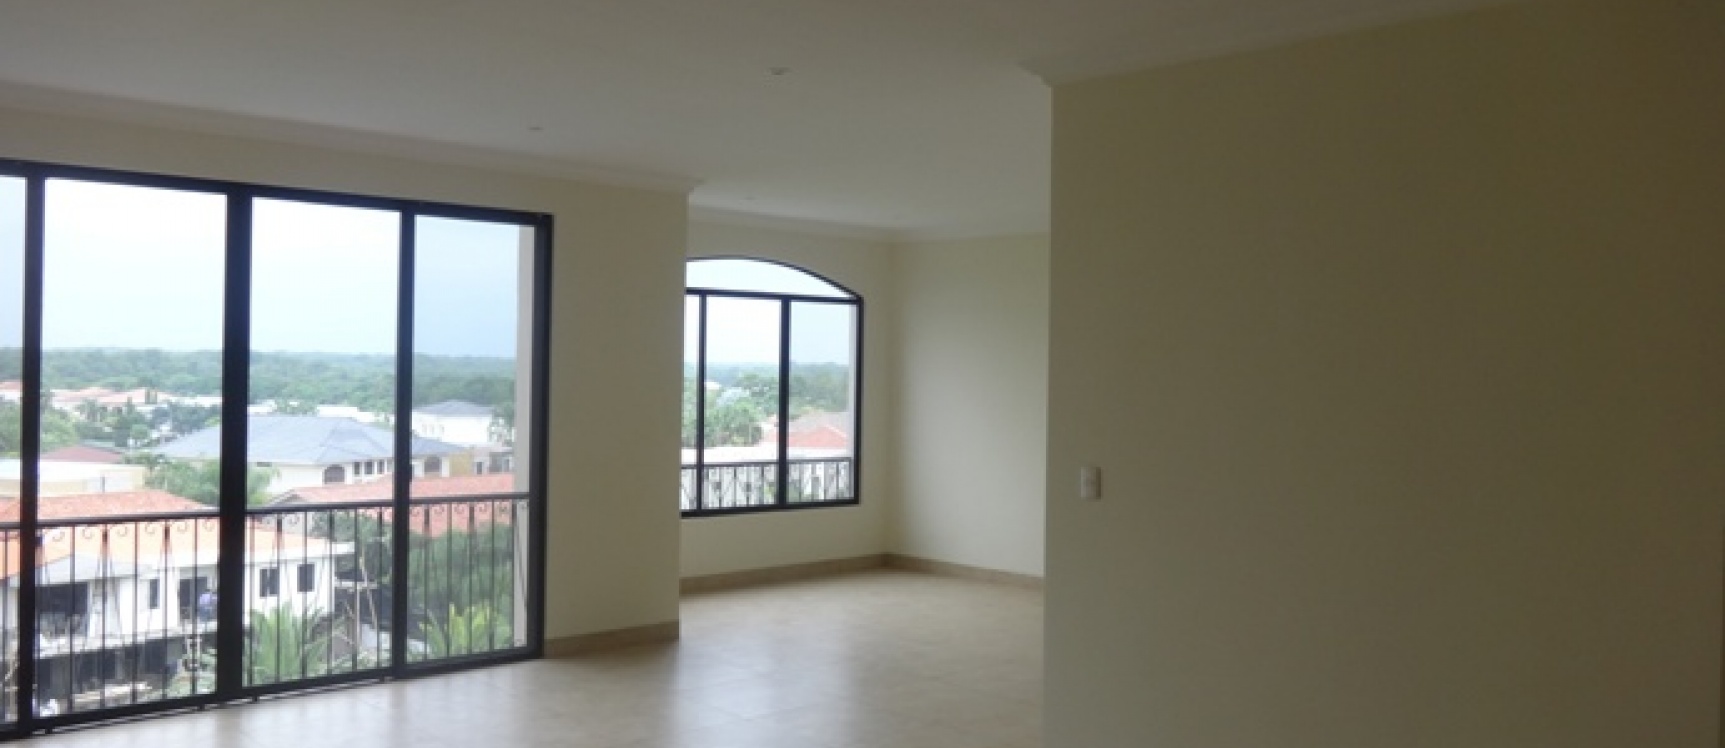 GeoBienes - Alquiler de departamentos en Guayaquil vía a la Costa  - Plusvalia Guayaquil Casas de venta y alquiler Inmobiliaria Ecuador